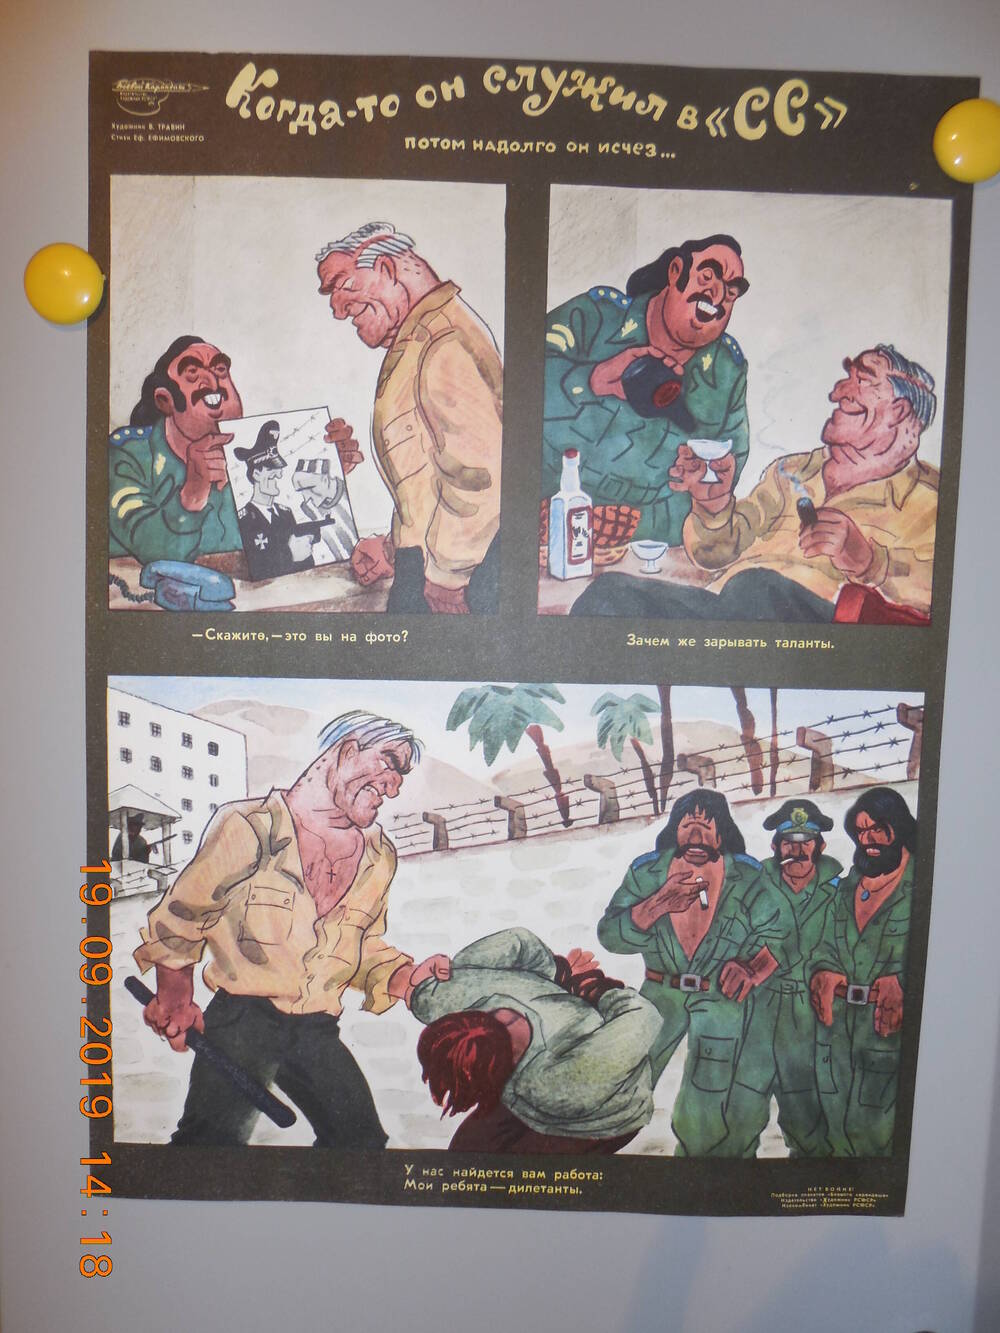 Плакат из подборки сатирических плакатов творческого объединения Боевой карандаш НЕТ ВОЙНЕ
Когда-то он служил в СС